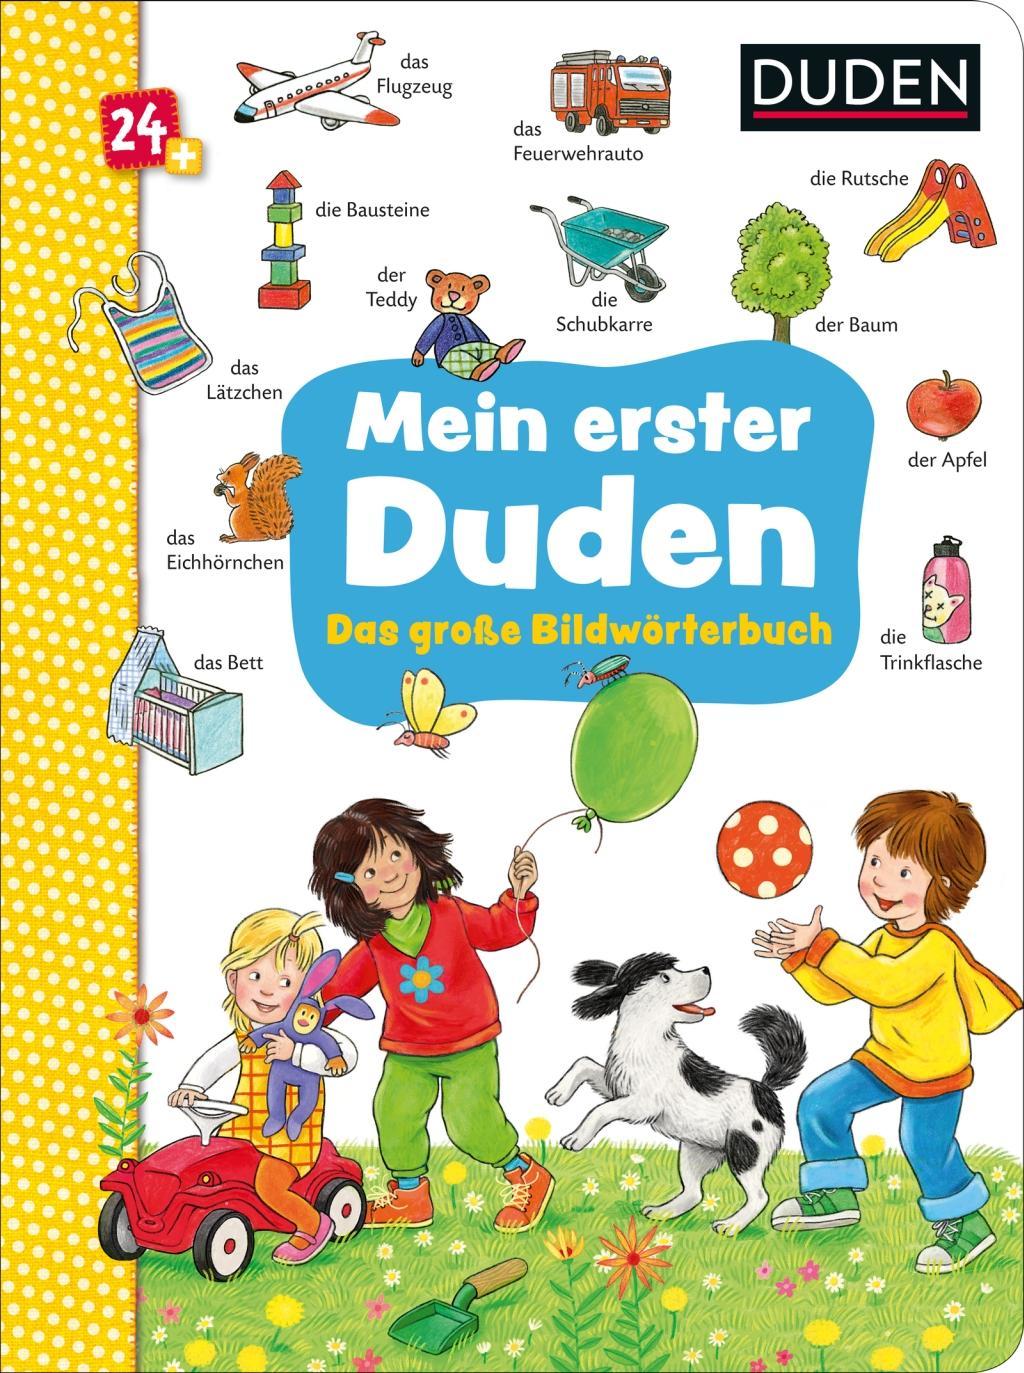 Книга Duden 24+: Mein erster Duden. Das große Bildwörterbuch 